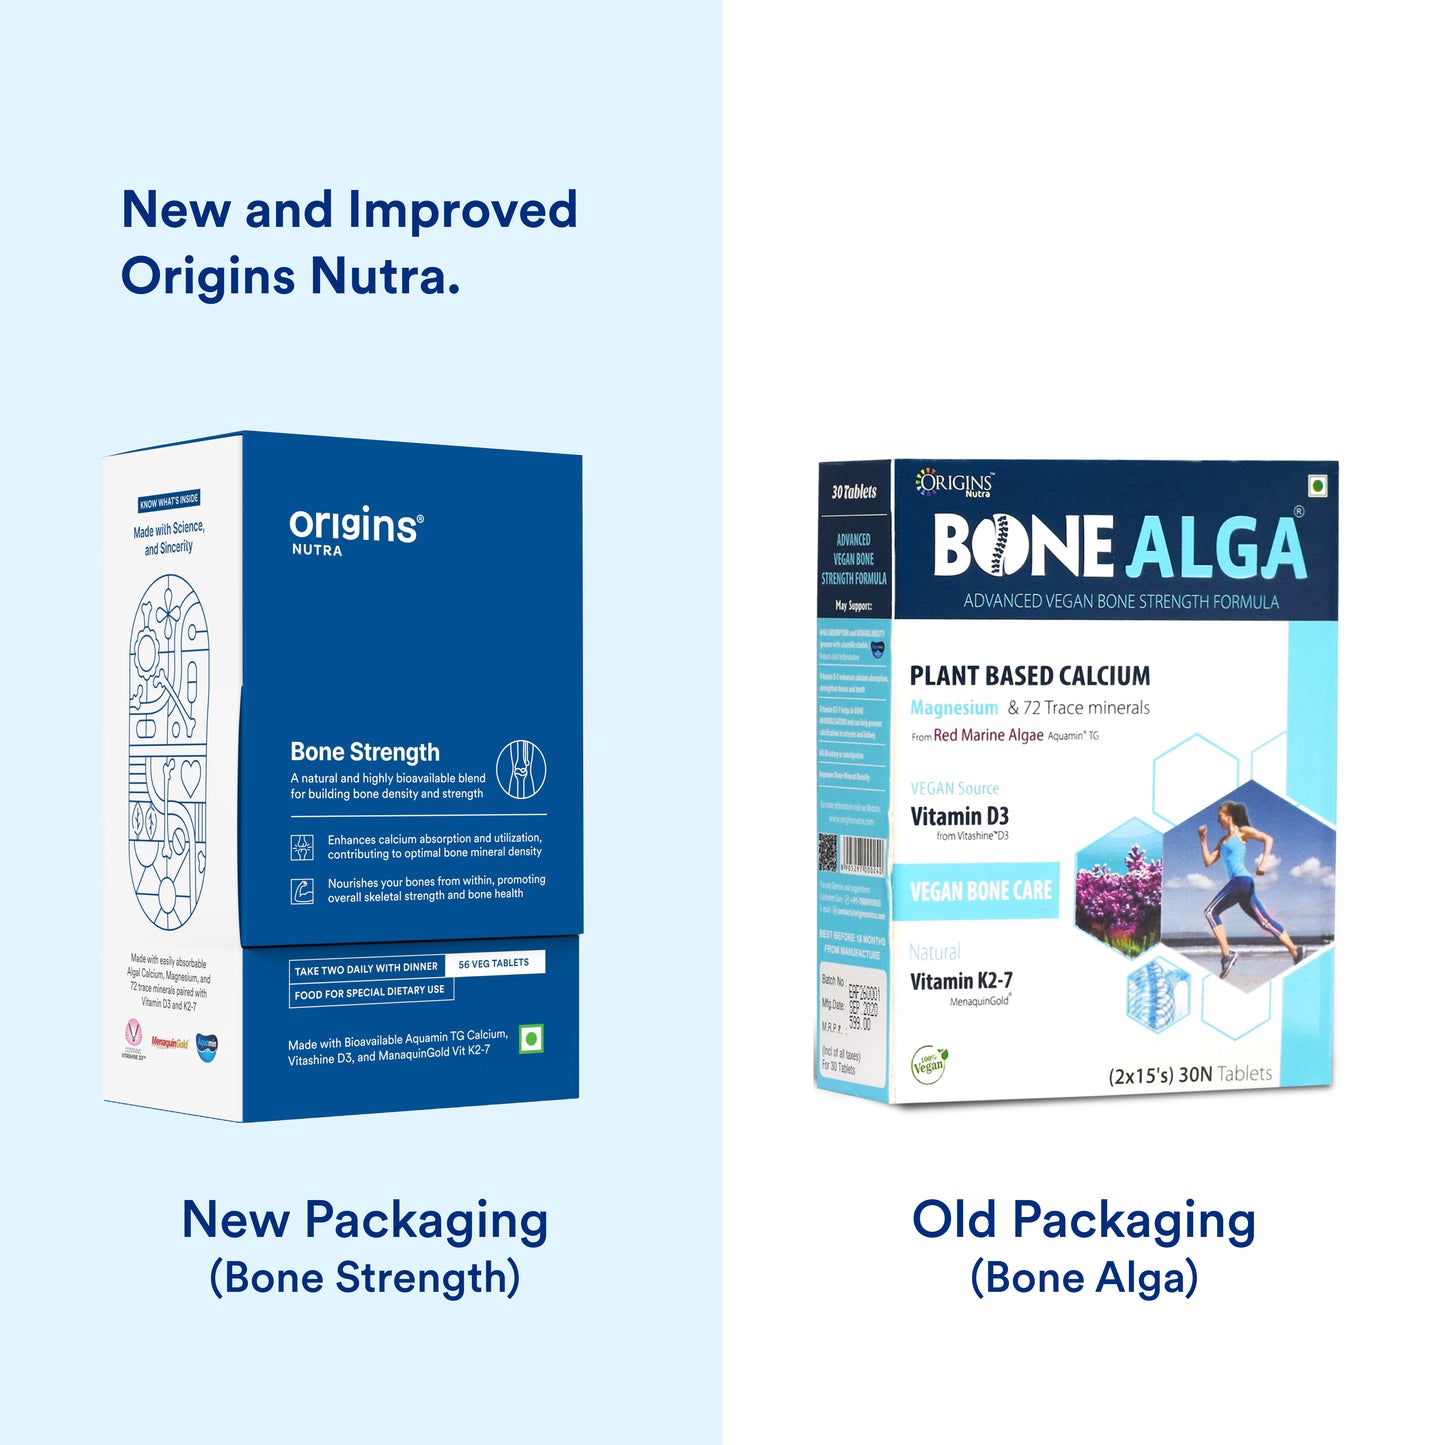 Origins Nutra Bone Strength | Builds Bone Density, Helps Joints Flexibility | Aquamin Tg, Natural Vitamin K27, Vitashine D3 | GMP Certified | For Men & Women | 56 Veg Tablets Pack of 2